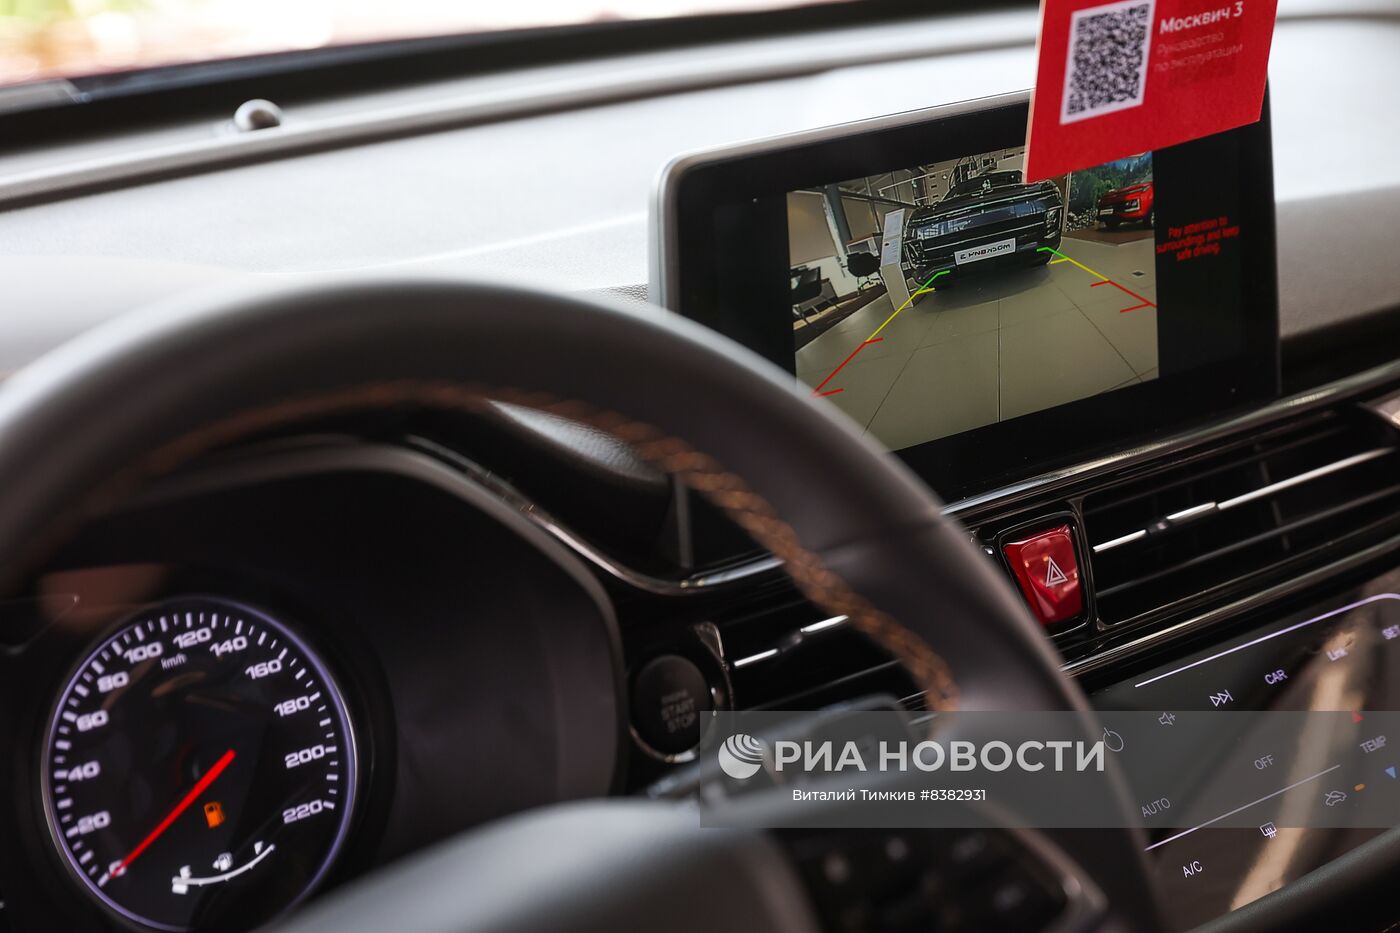 Старт продаж автомобилей "Москвич" у всех официальных дилеров